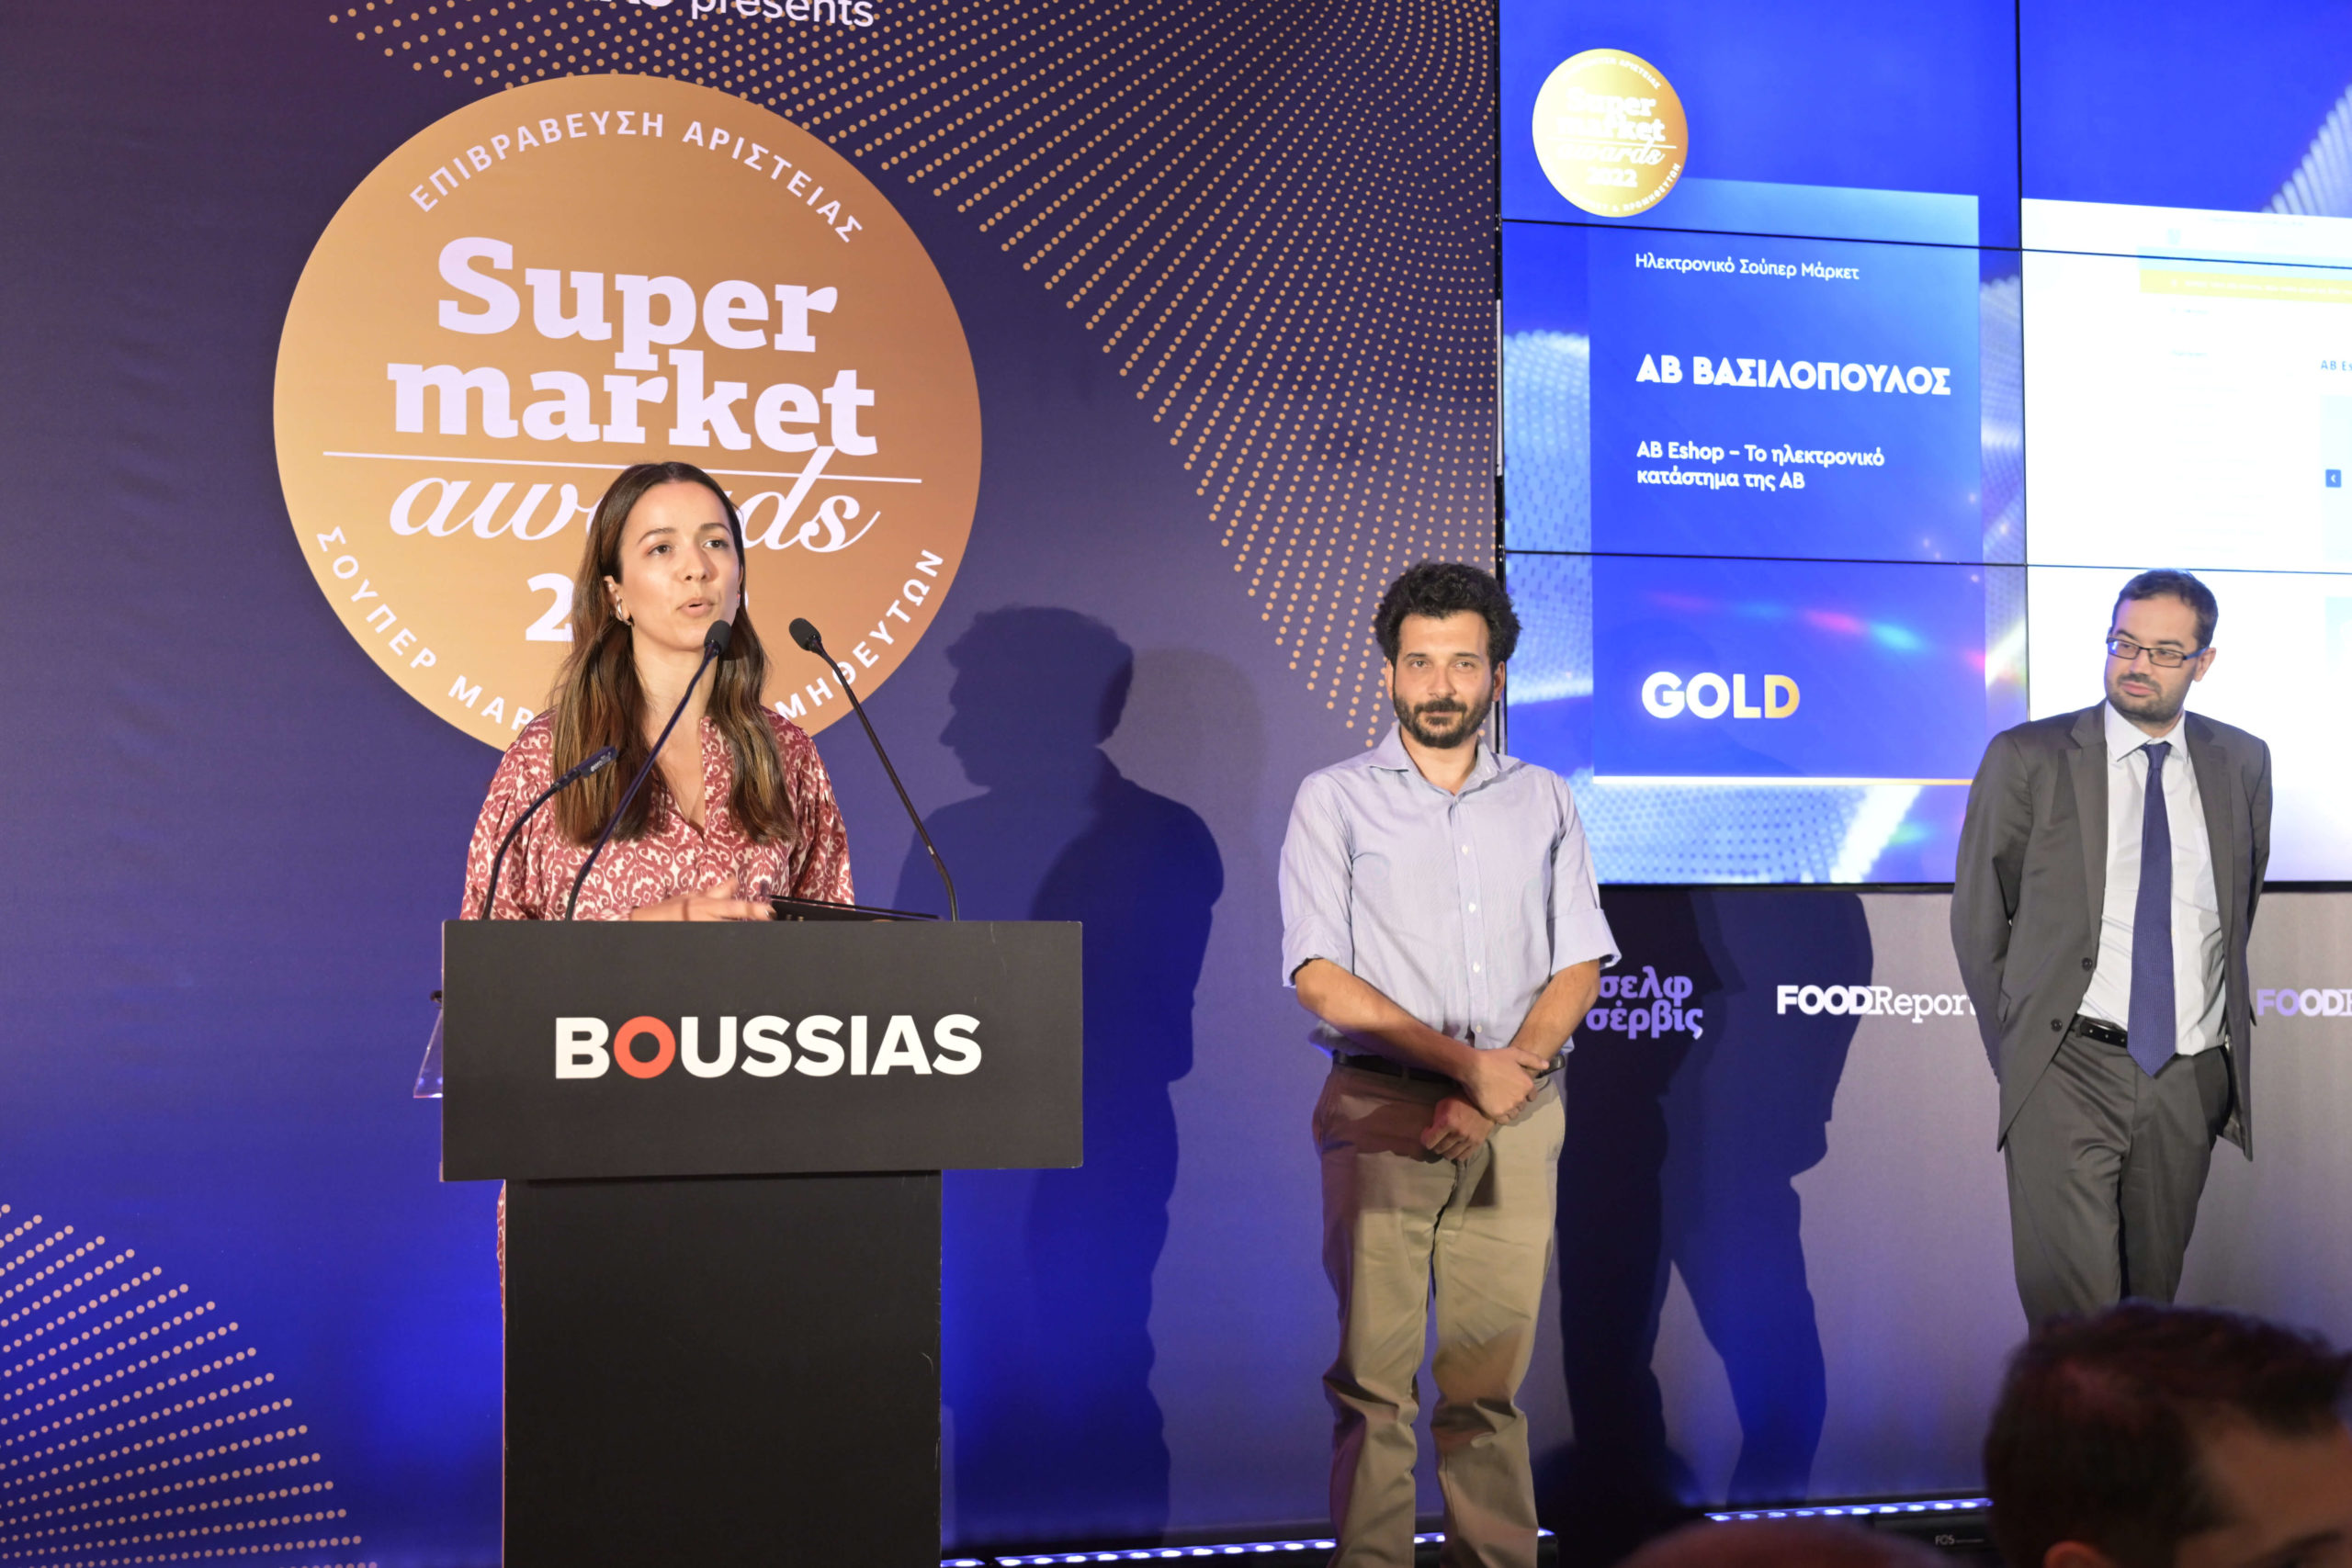  (από αριστερά προς τα δεξιά) Το Gold βραβείο στην κατηγορία Ηλεκτρονικό́ Σούπερ Μάρκετ, παραλαμβάνουν η Μπάμπαλη Λουκία, E- Commerce Manager AB Βασιλόπουλος και ο Βασίλης Νασόπουλος, E-Commerce Marketing Supervisor ΑΒ Βασιλόπουλος. 